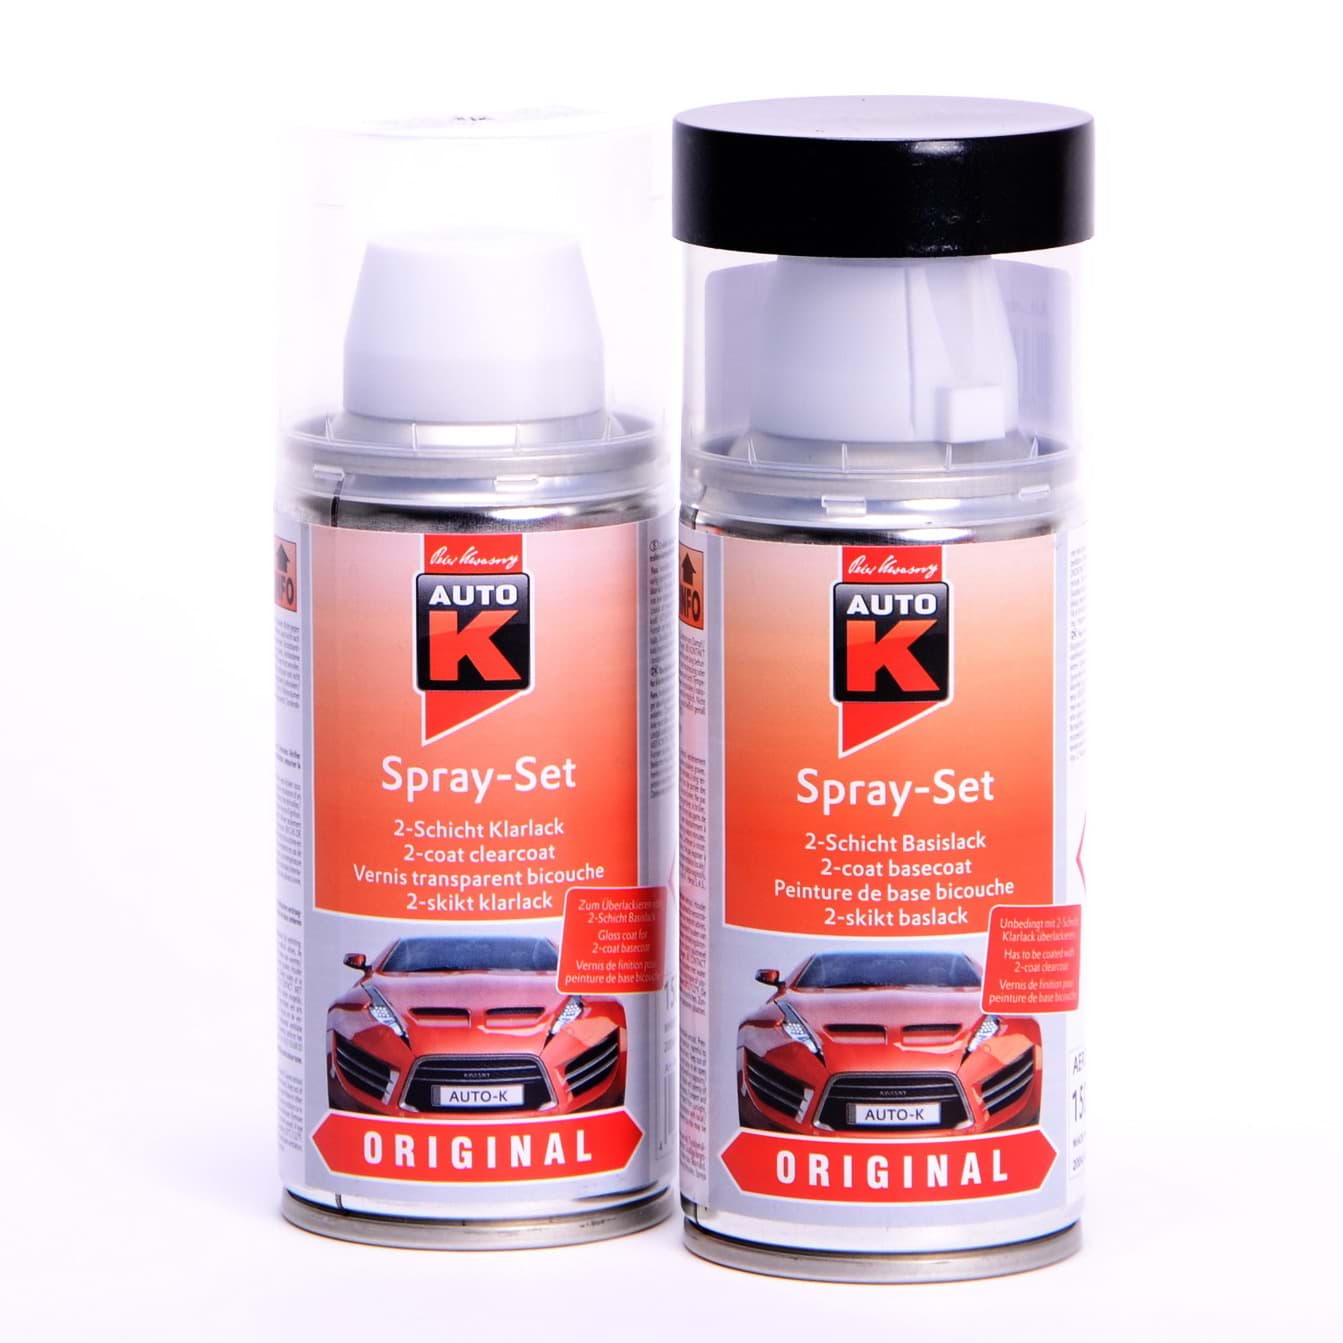 Afbeelding van Auto-K Spray-Set Autolack für Mercedes 568 Signalrot 23136